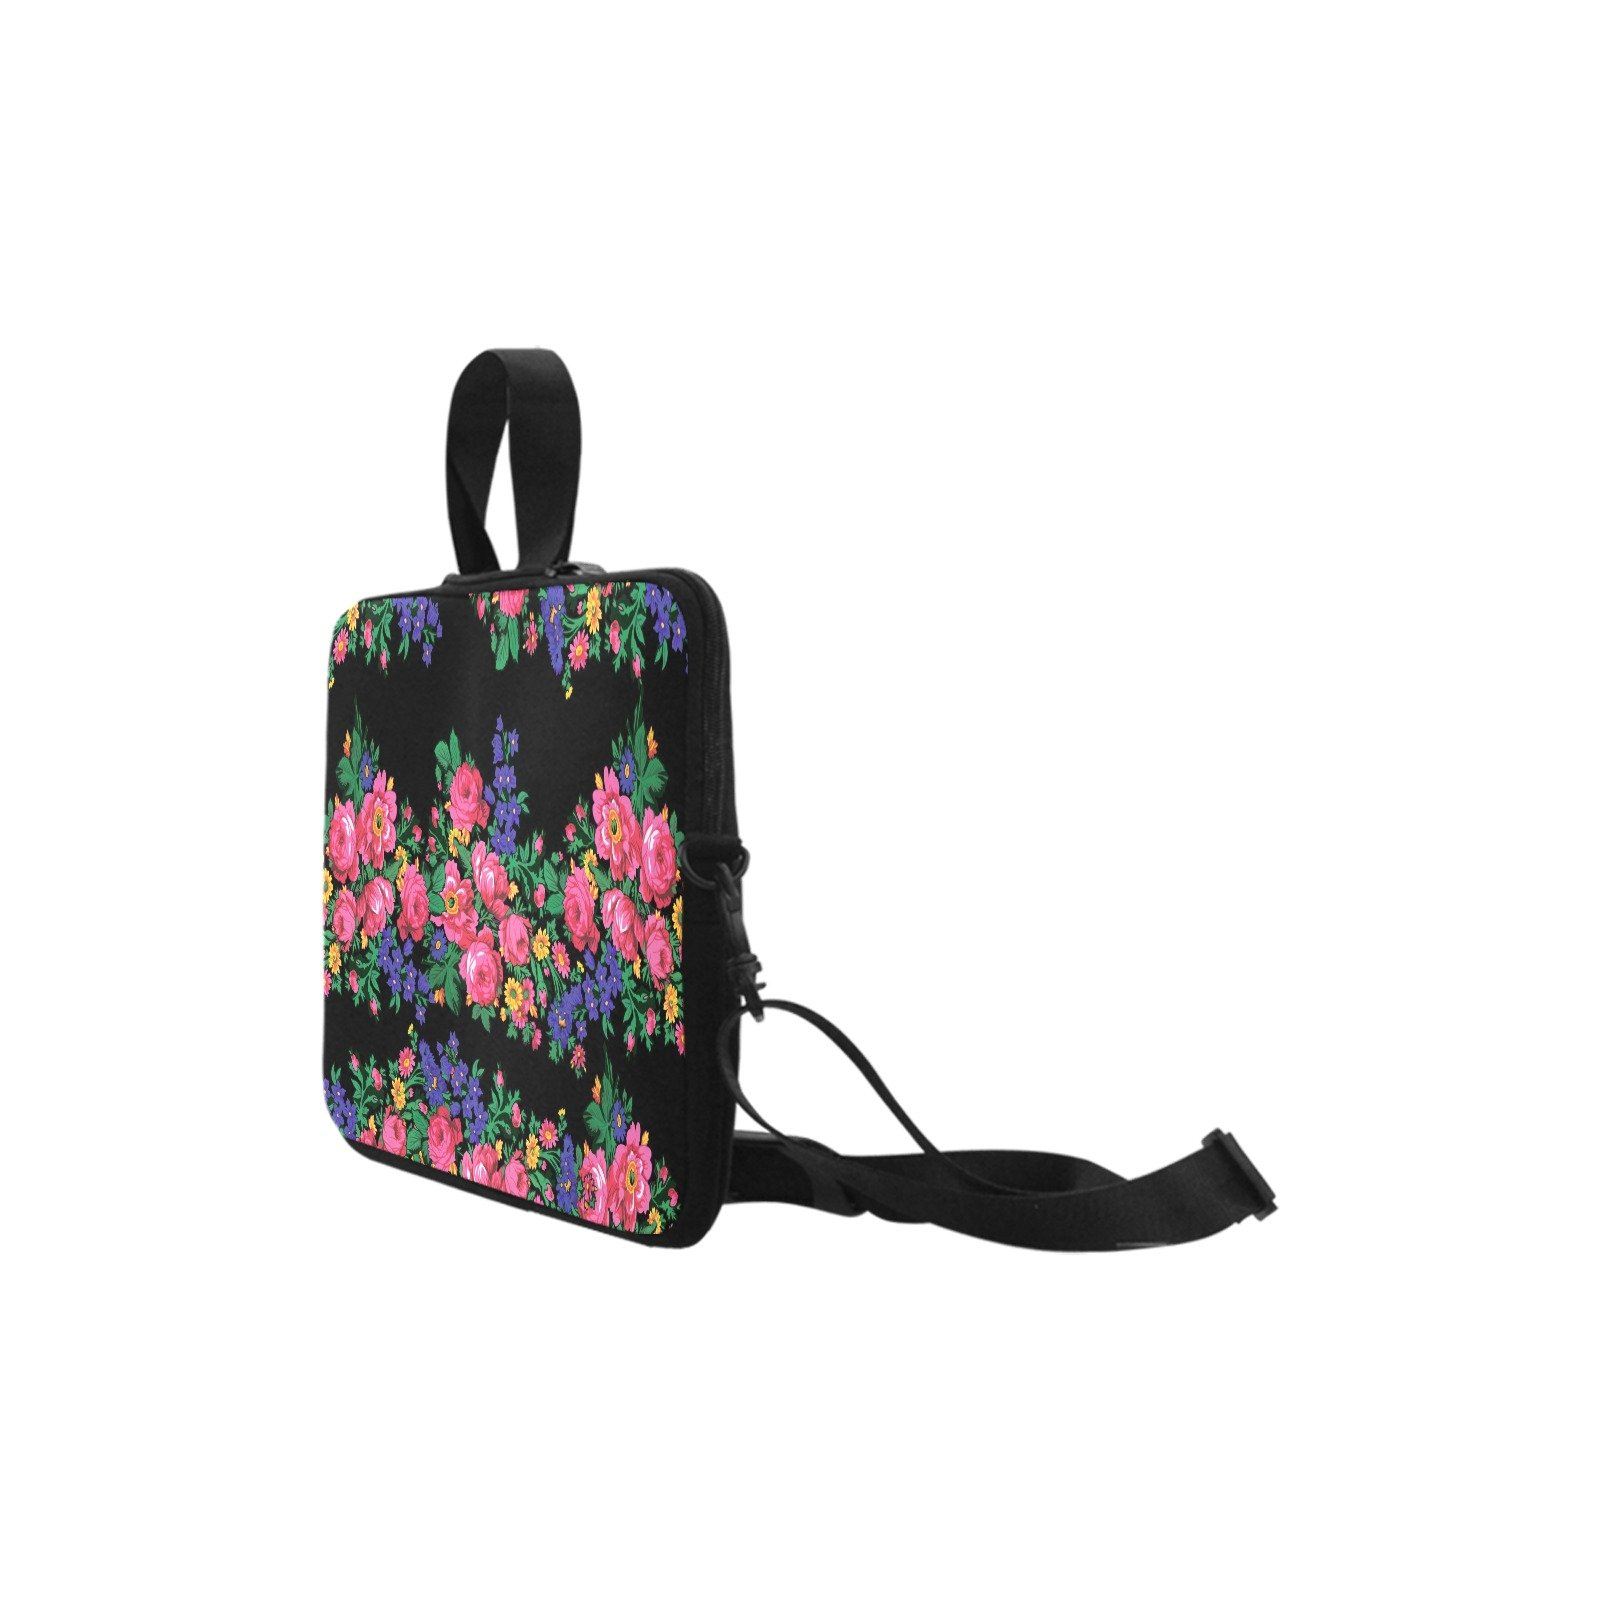 Kokum's Revenge Black Laptop Handbags 17" bag e-joyer 